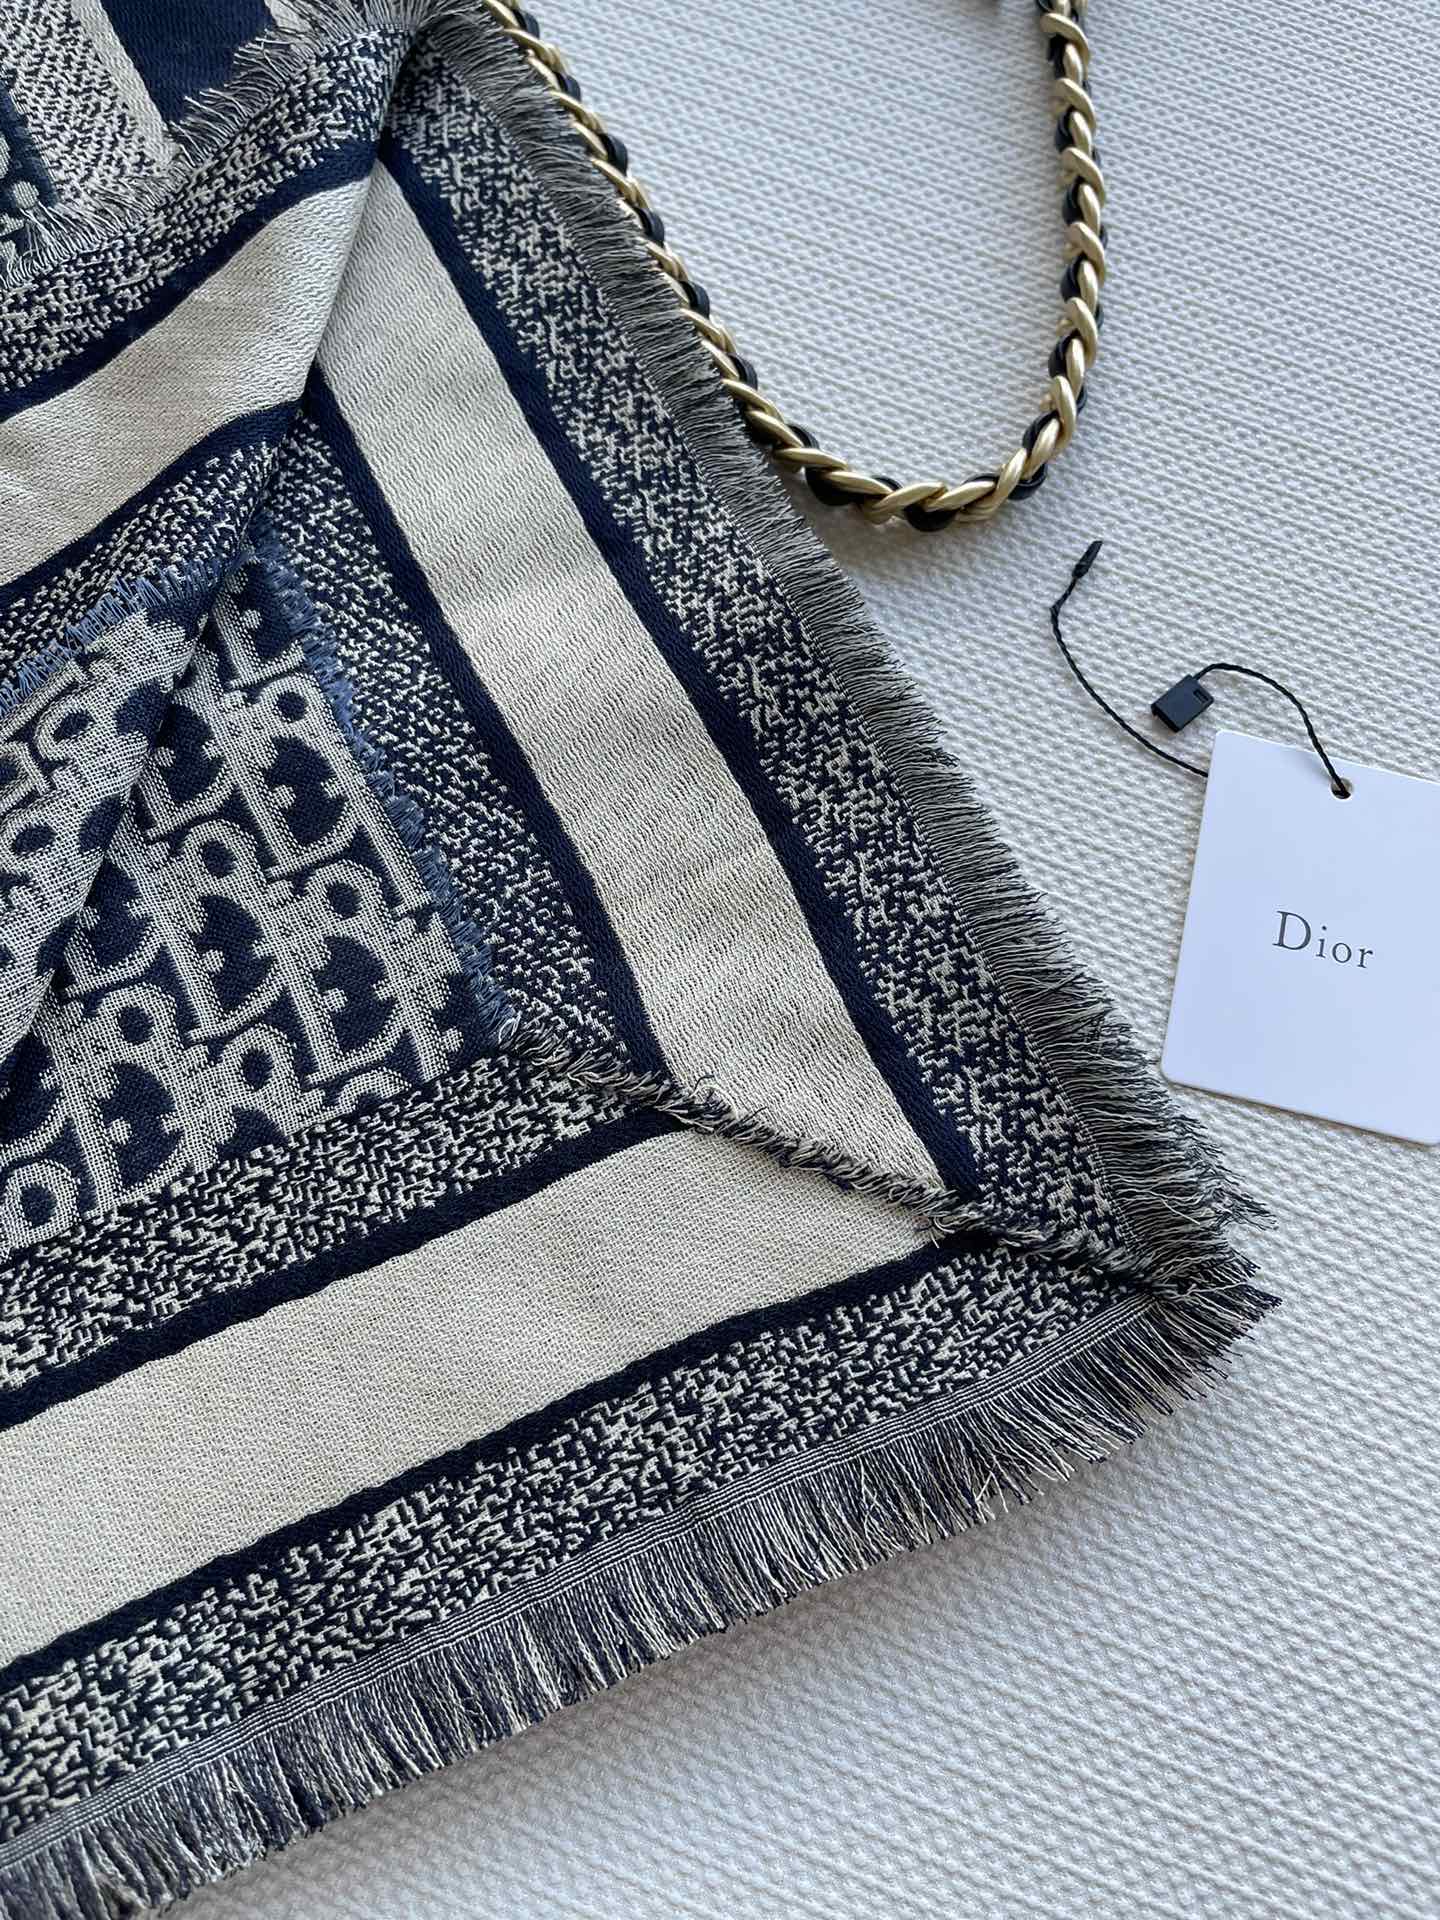 爆款原单极品来啦Dior最最新的专柜主打款D丛林动物原单140羊绒方巾度假及日常都非常好搭配的款订单私流